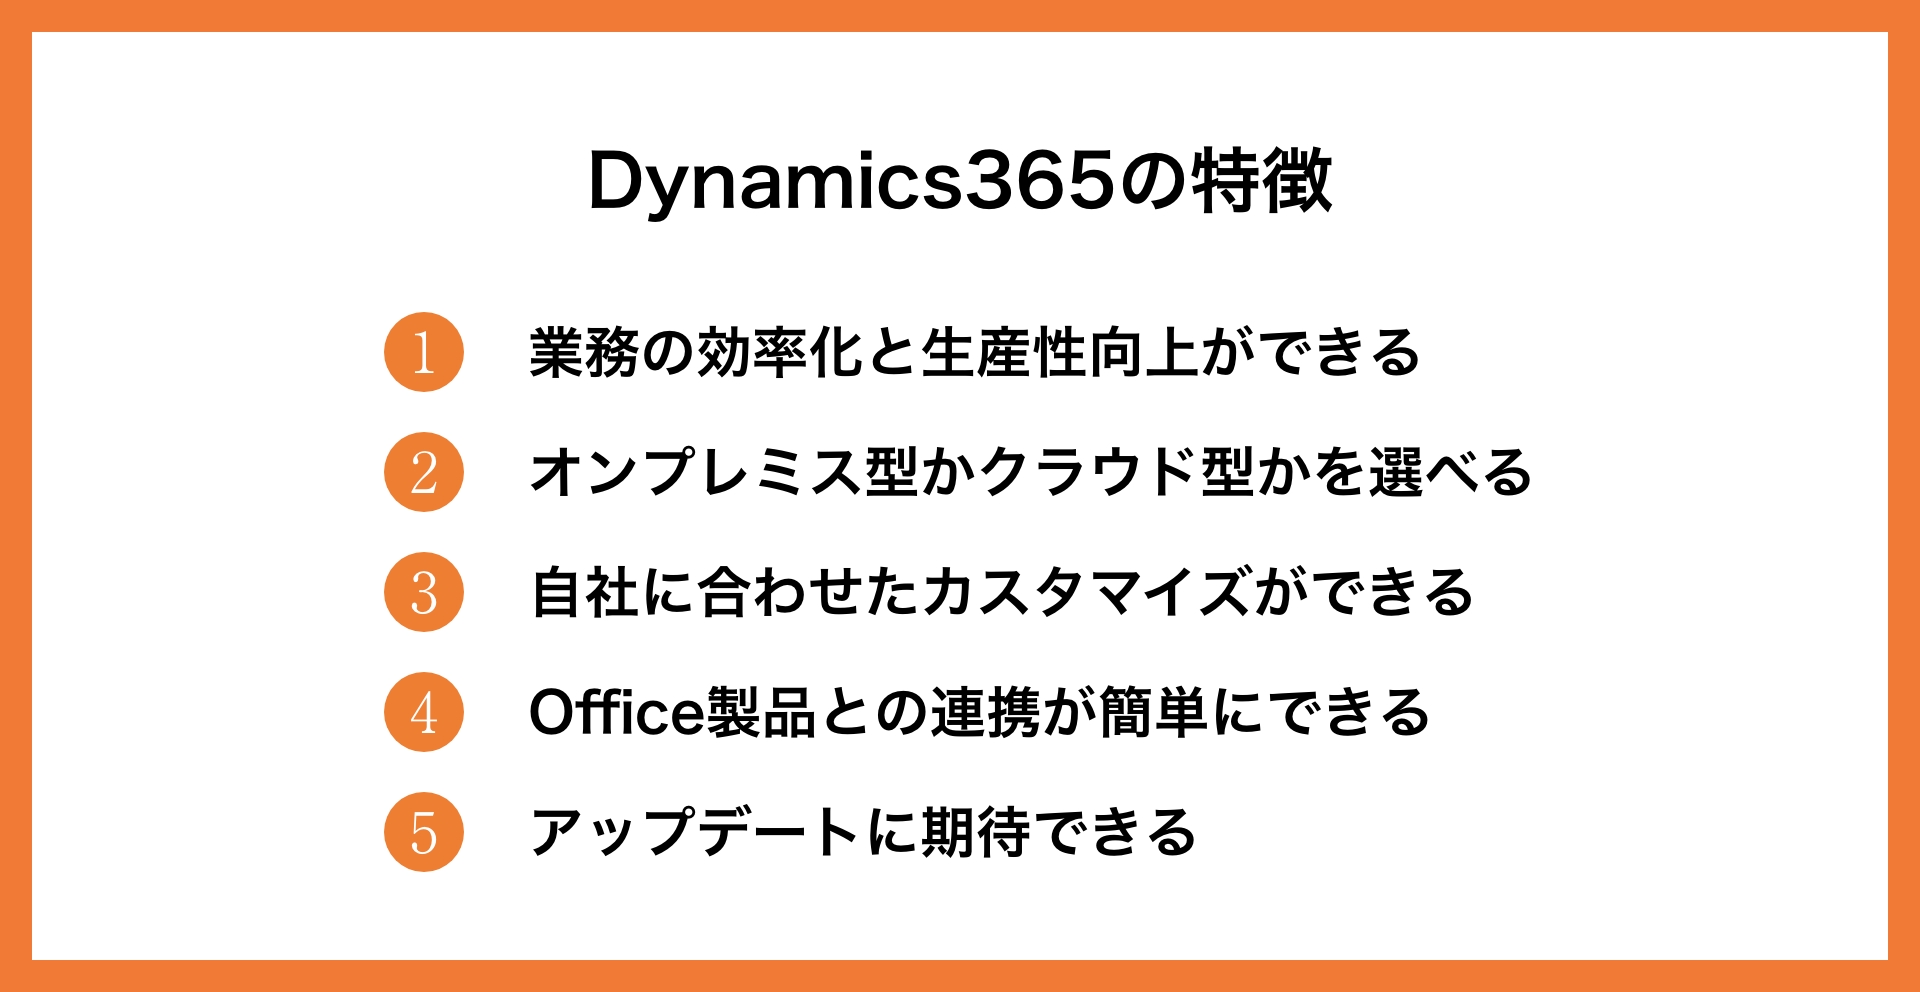 Dynamic365の機能やメリット、プランなどについて徹底解説_3